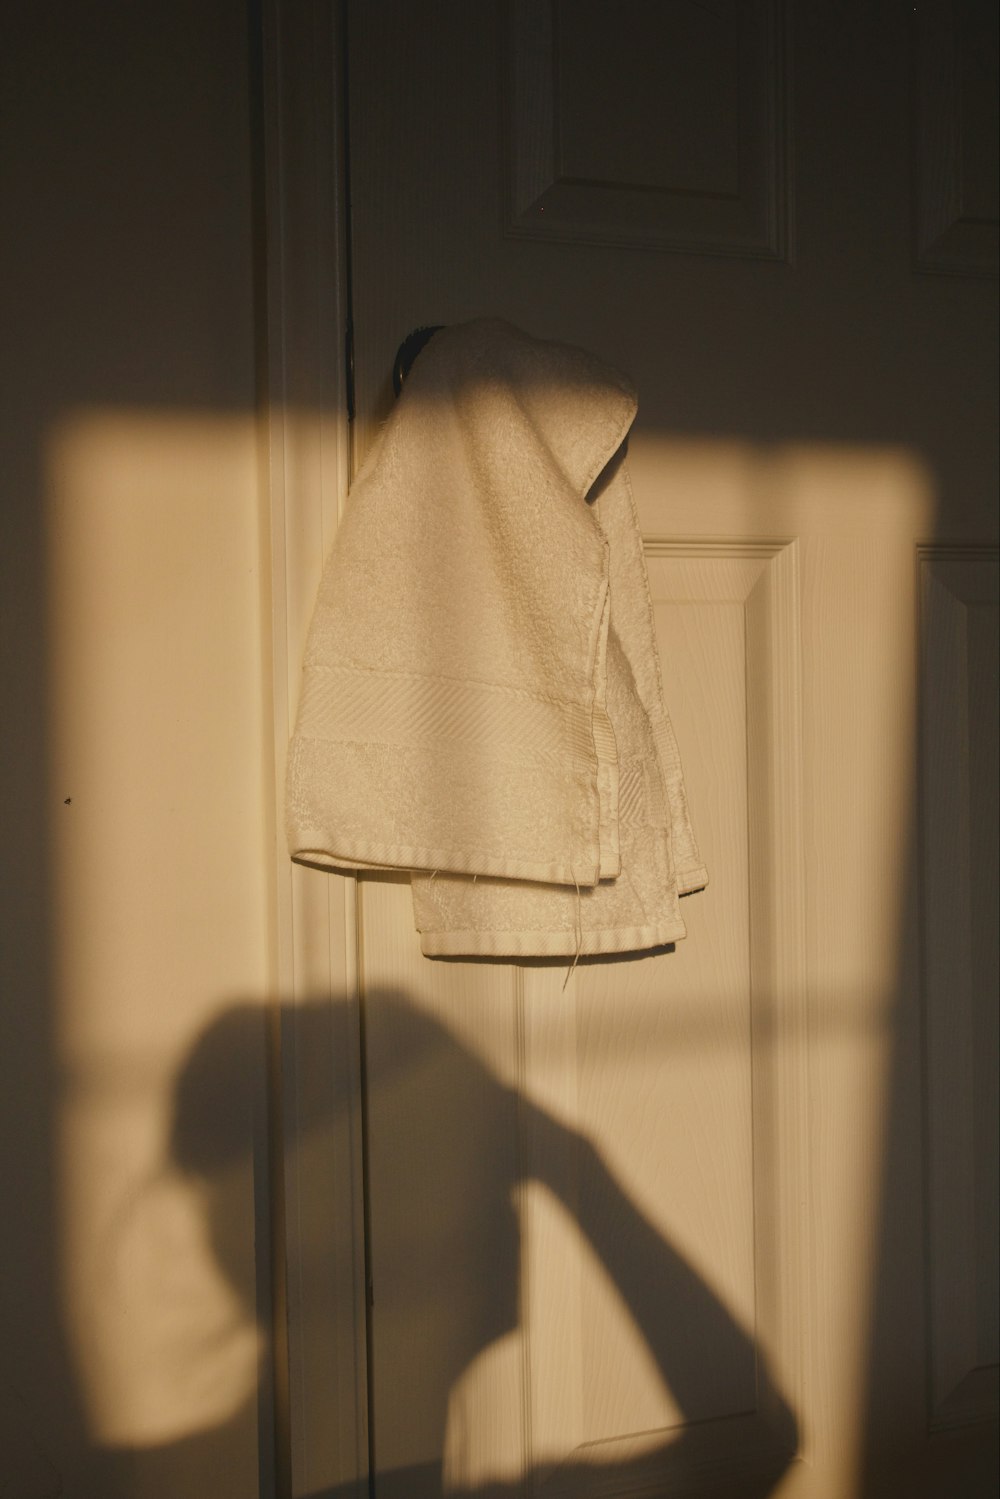 La sombra de la mano de una persona en una puerta